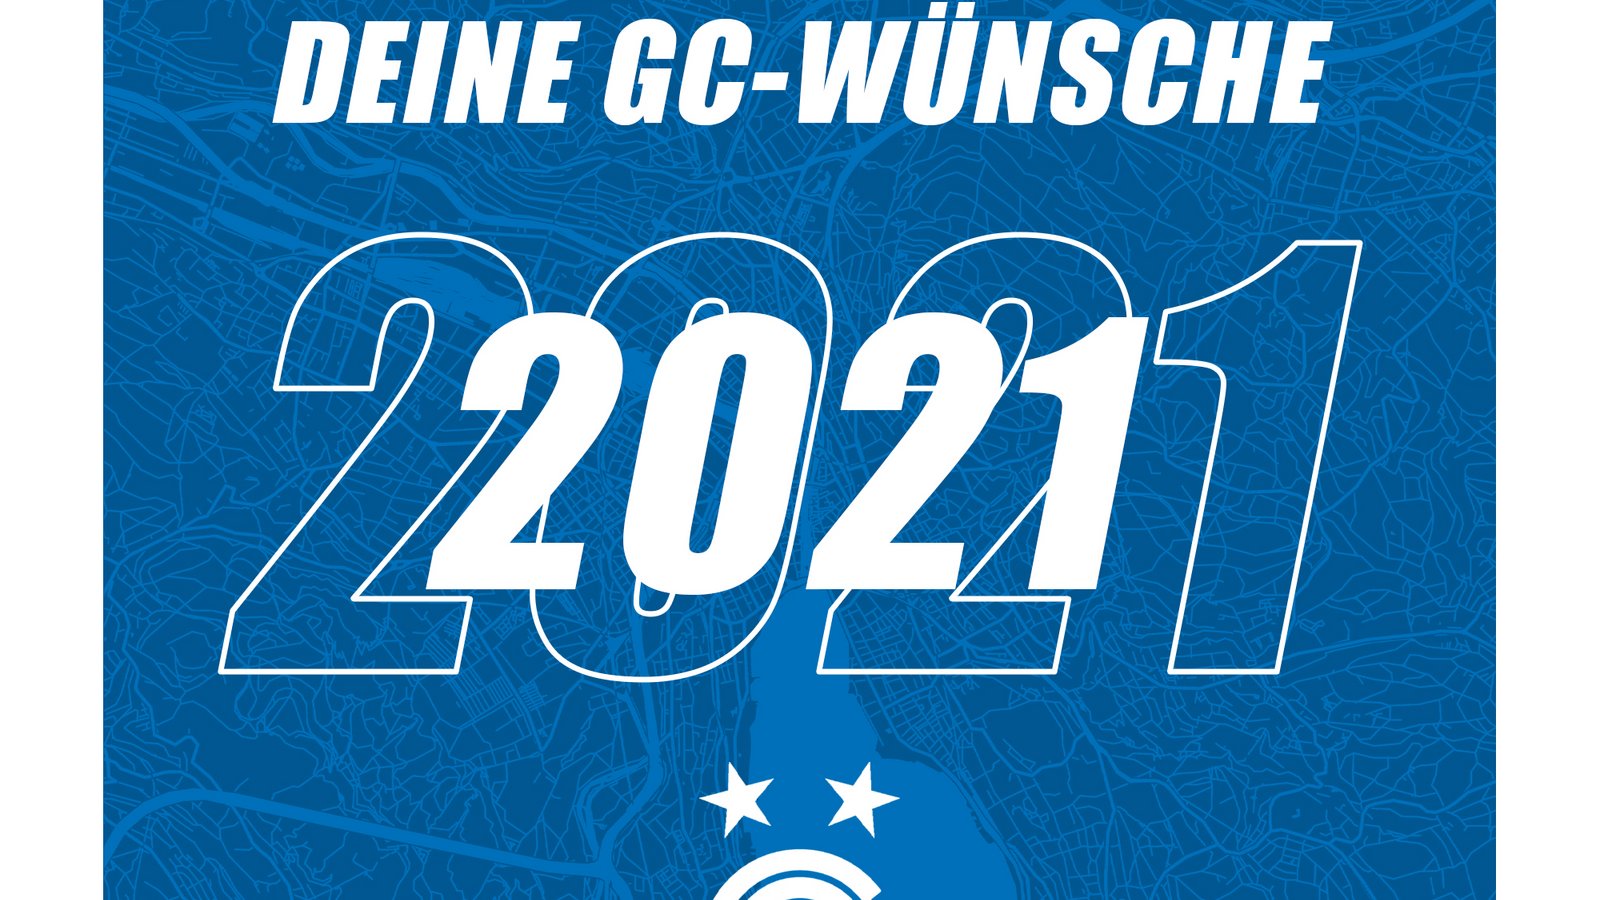 SENDET UNS EURE GC-WÜNSCHE FÜR 2021